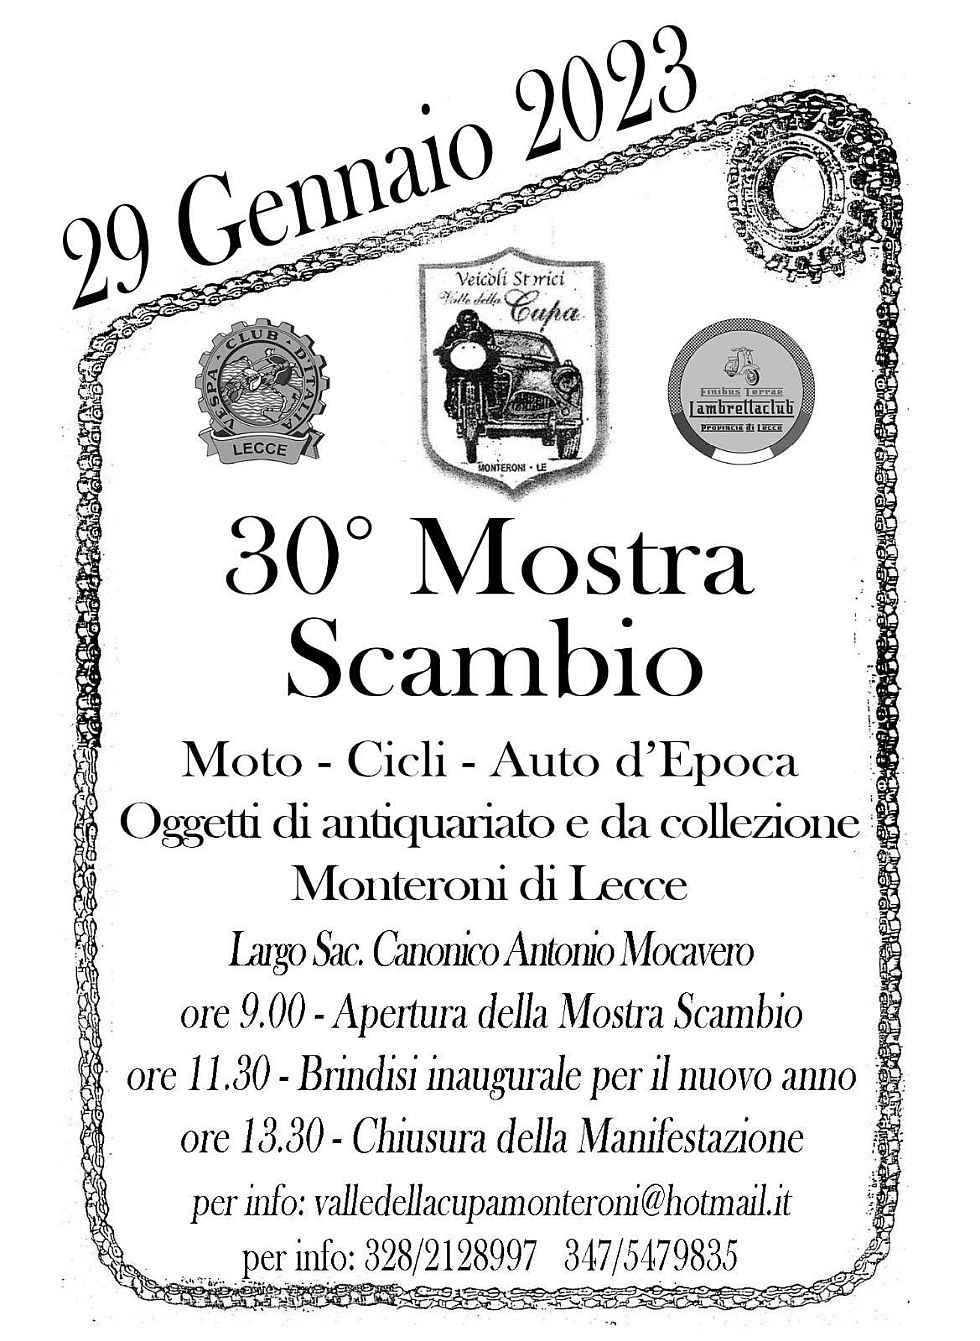 Monteroni di Lecce (LE)
"30^ Mostra Scambio Moto, Cicli, Auto d'epoca"
29 Gennaio 2023